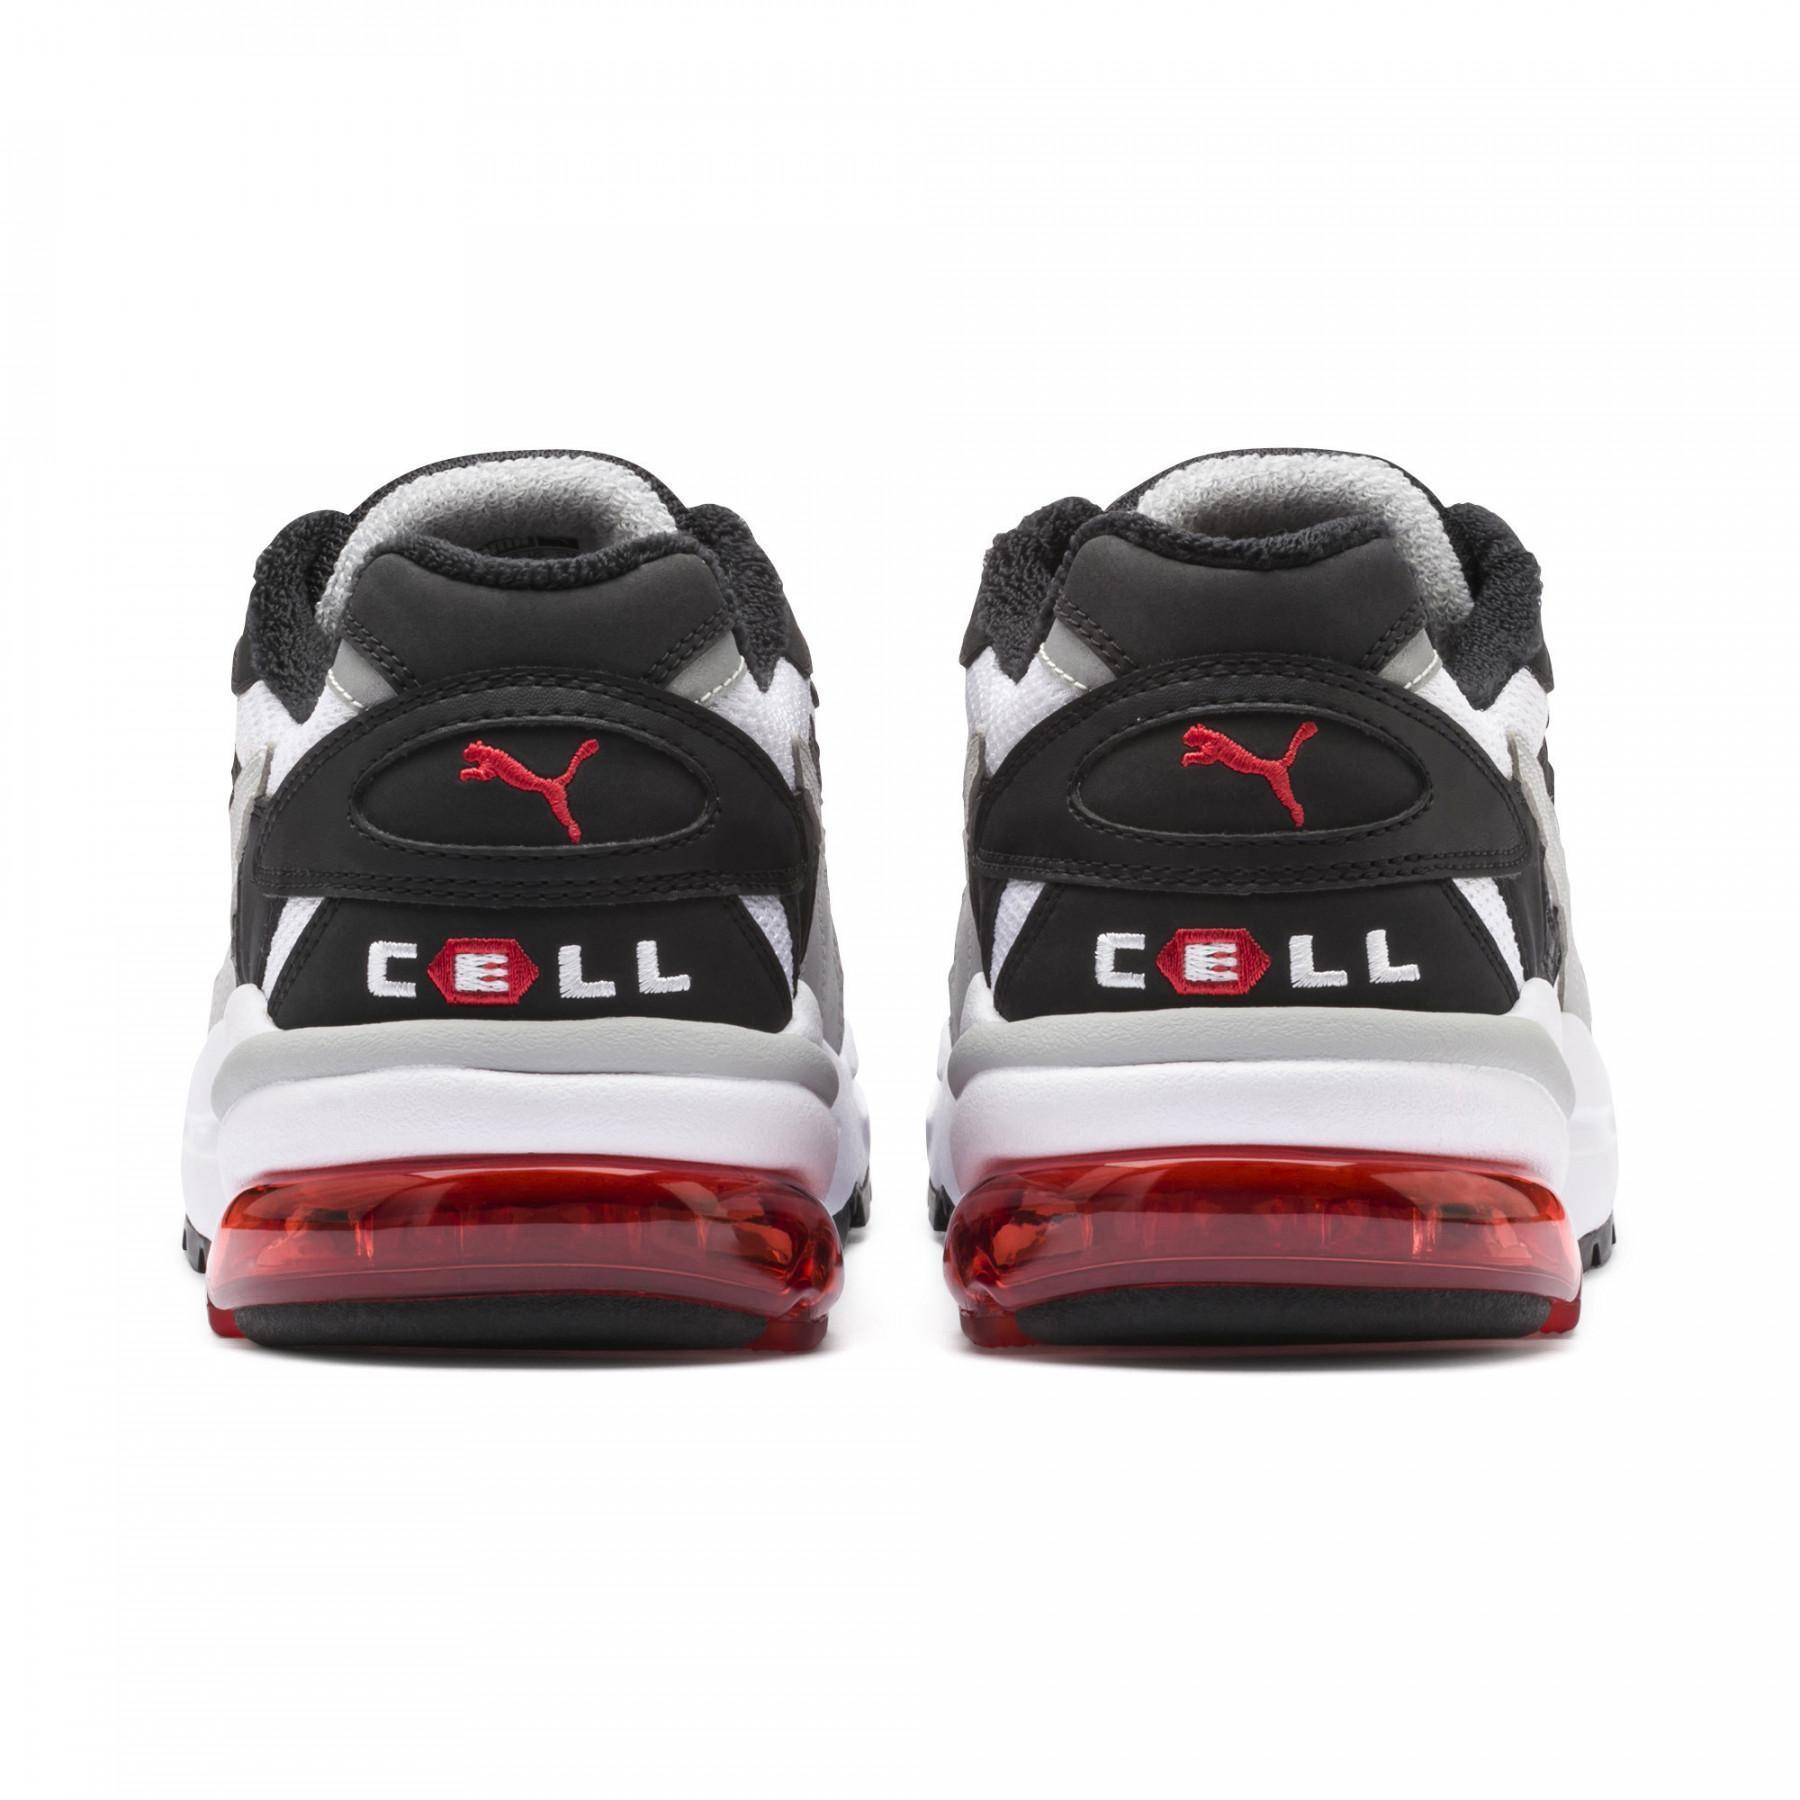 Sneakers Puma Cell Alien OG